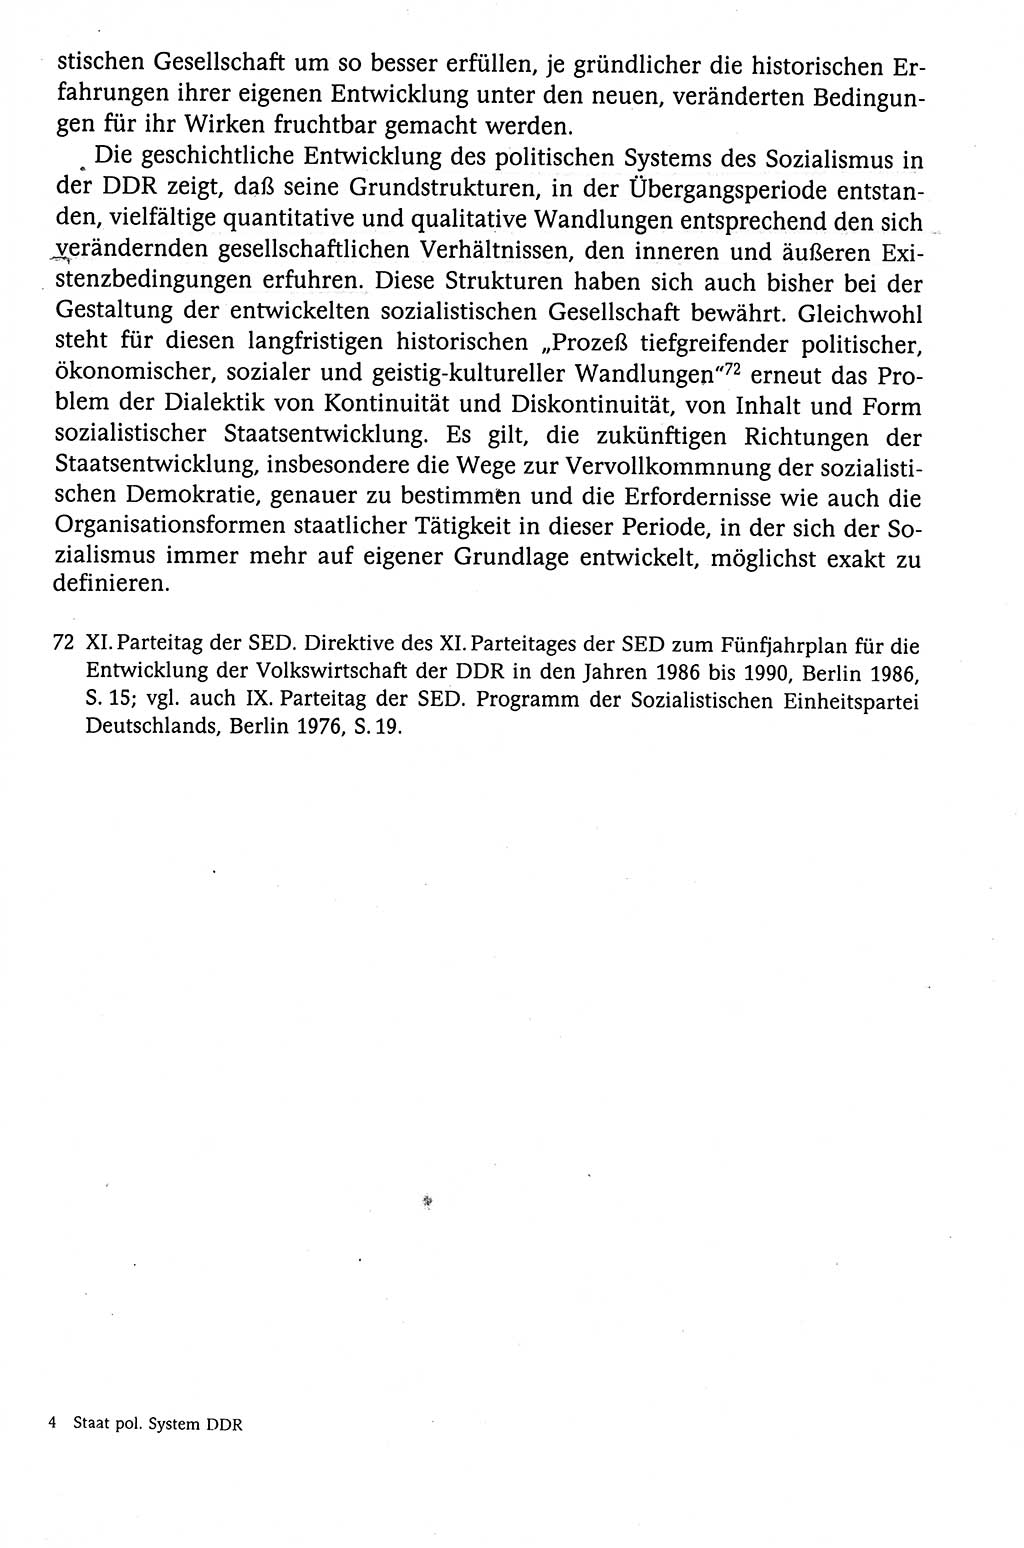 Der Staat im politischen System der DDR (Deutsche Demokratische Republik) 1986, Seite 49 (St. pol. Sys. DDR 1986, S. 49)